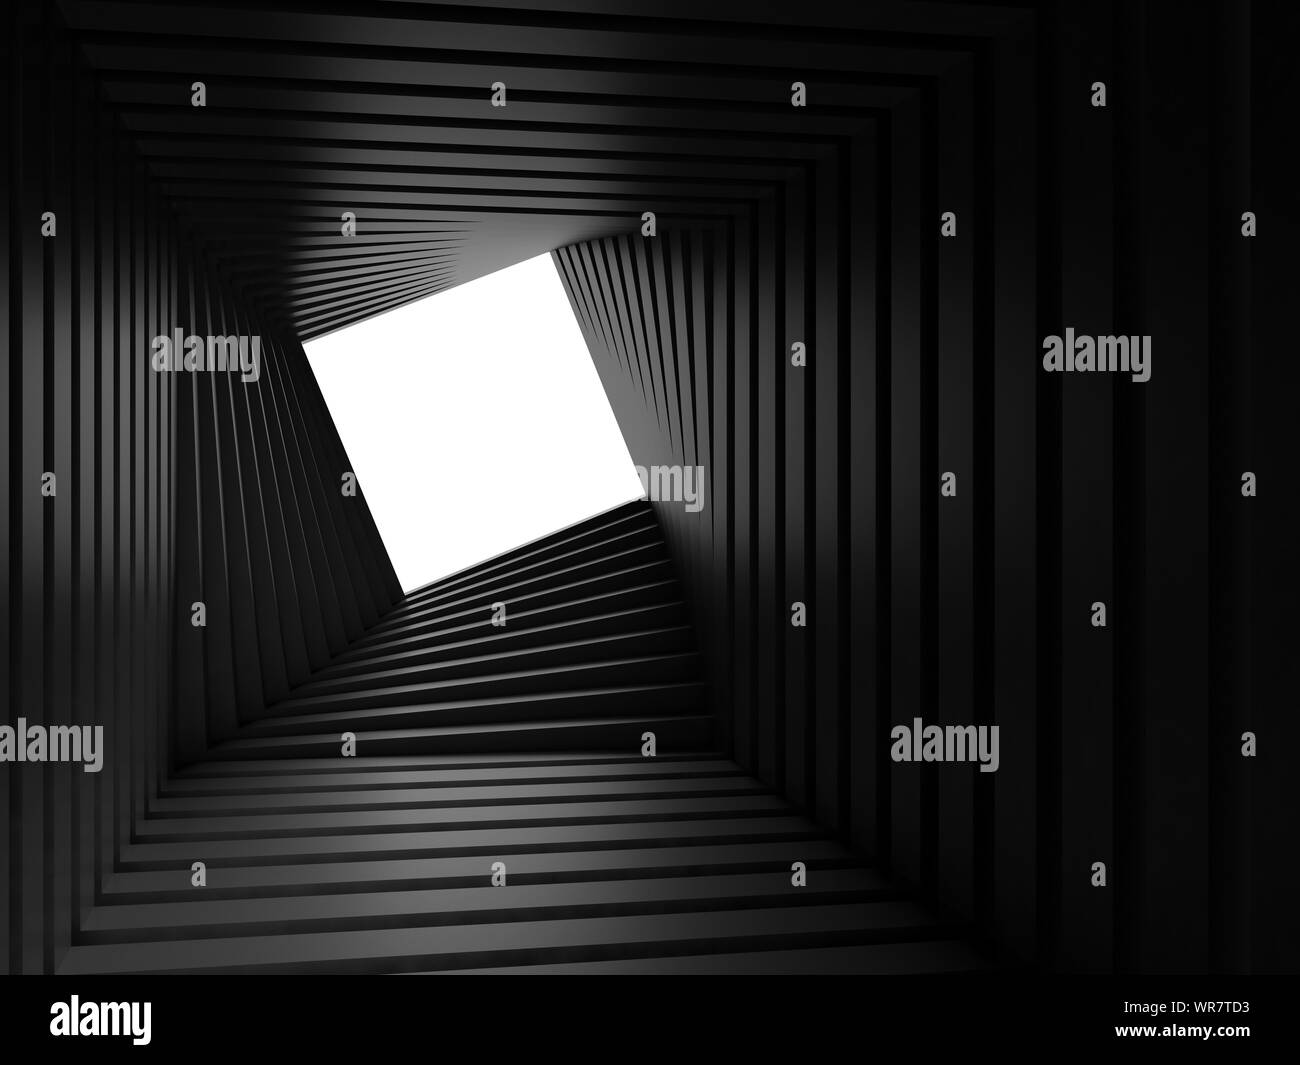 Abstrakte Dark Twisted tunnel Innenraum mit weißen rechteckigen Fenster am Ende, parametrische geometrischen Hintergrund. 3D Rendering illustration Stockfoto